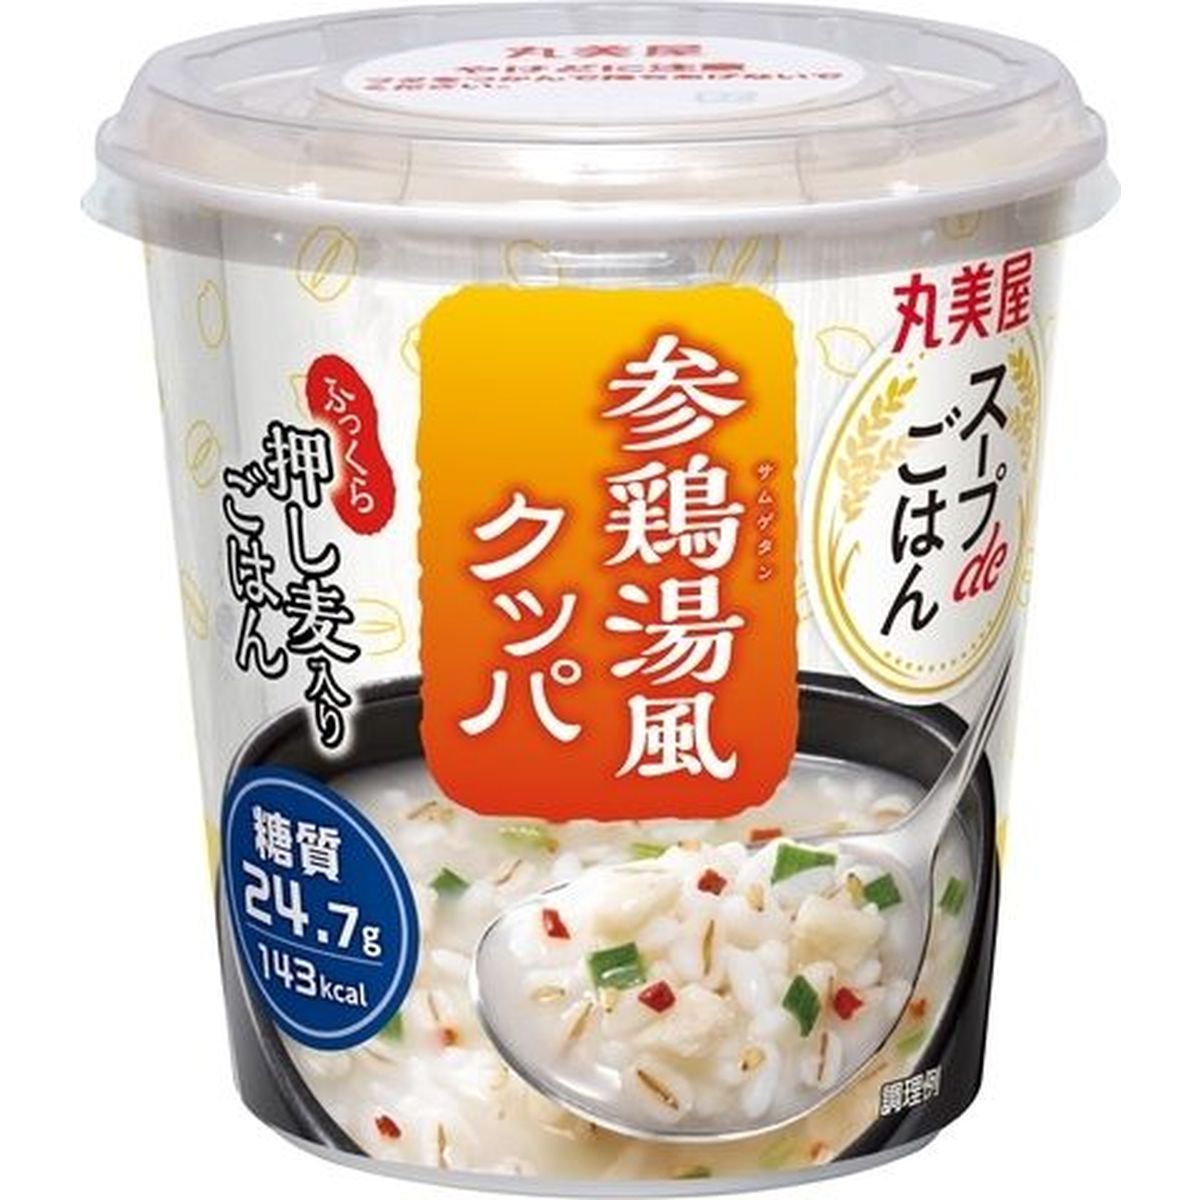 【6個入リ】丸美屋 スープdeゴハン 参鶏湯風クッパ 70.2g